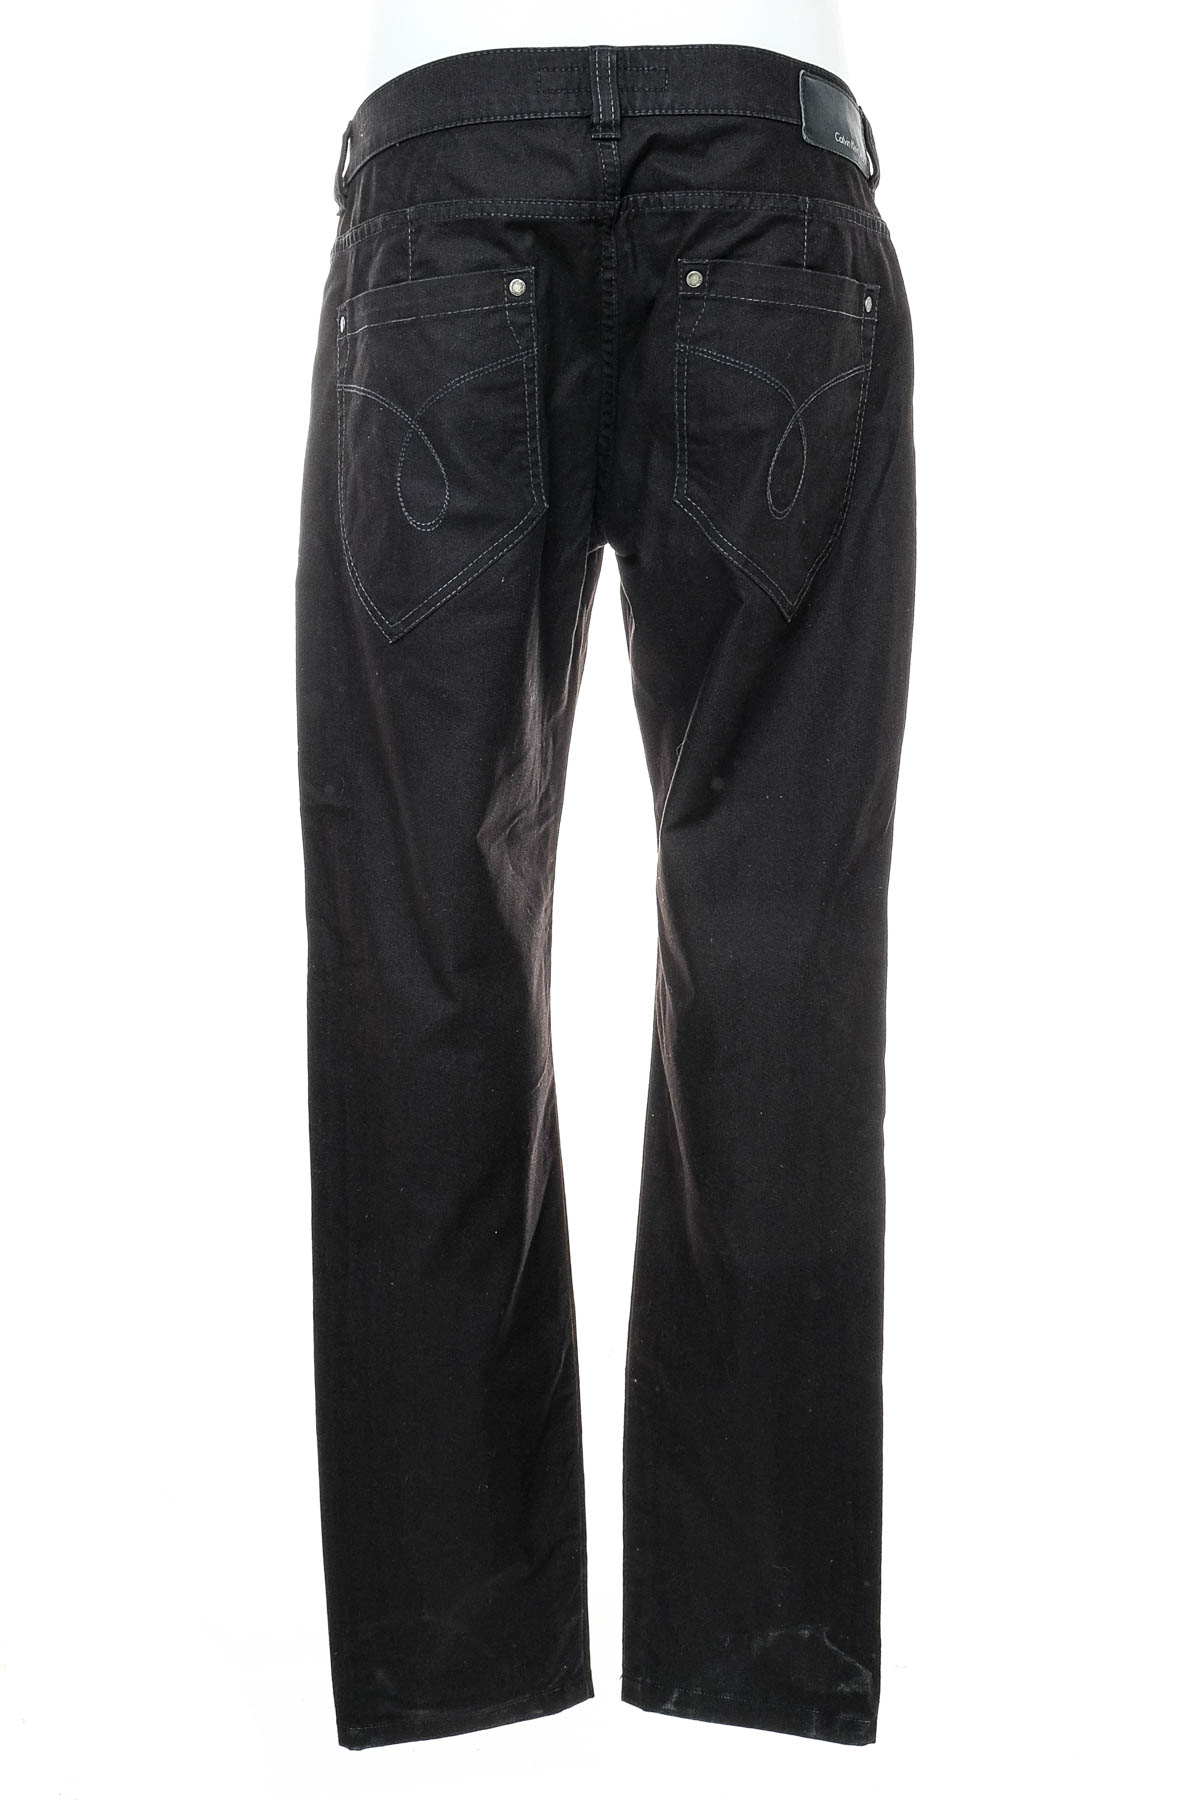 Pantalon pentru bărbați - Calvin Klein - 1